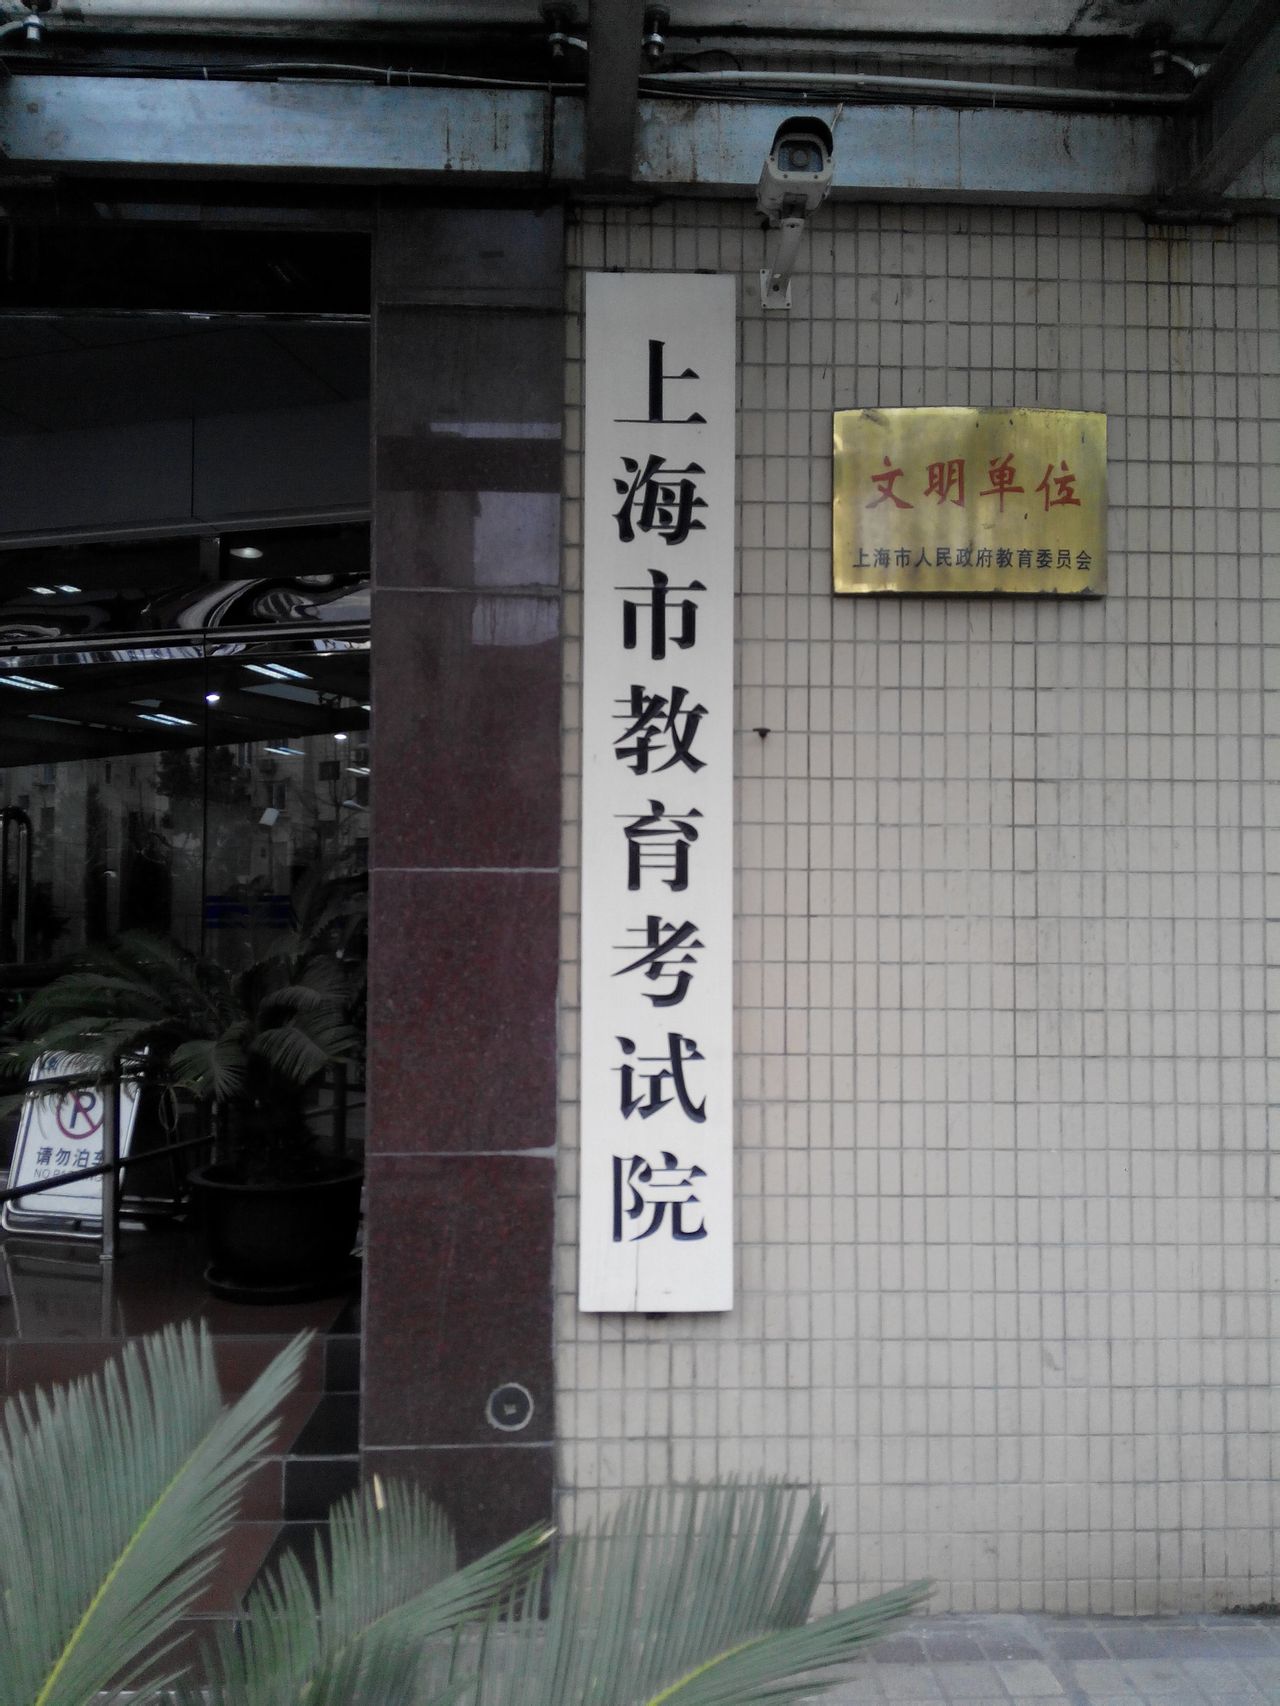 上海市教育考試院